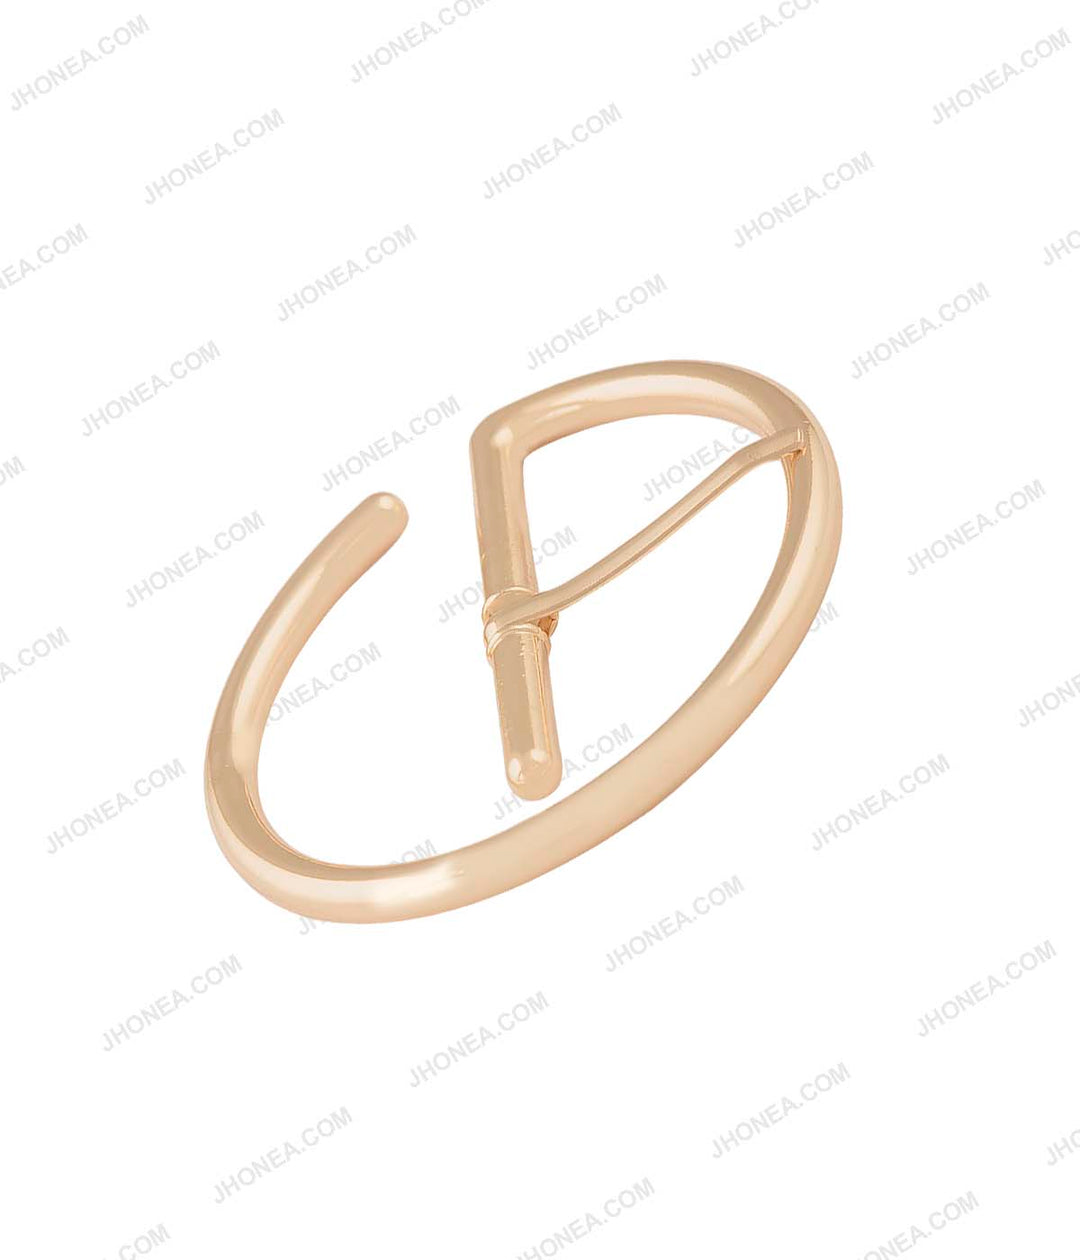 Superior Shiny Gold Western Style Round Shape Prong Belt Buckle